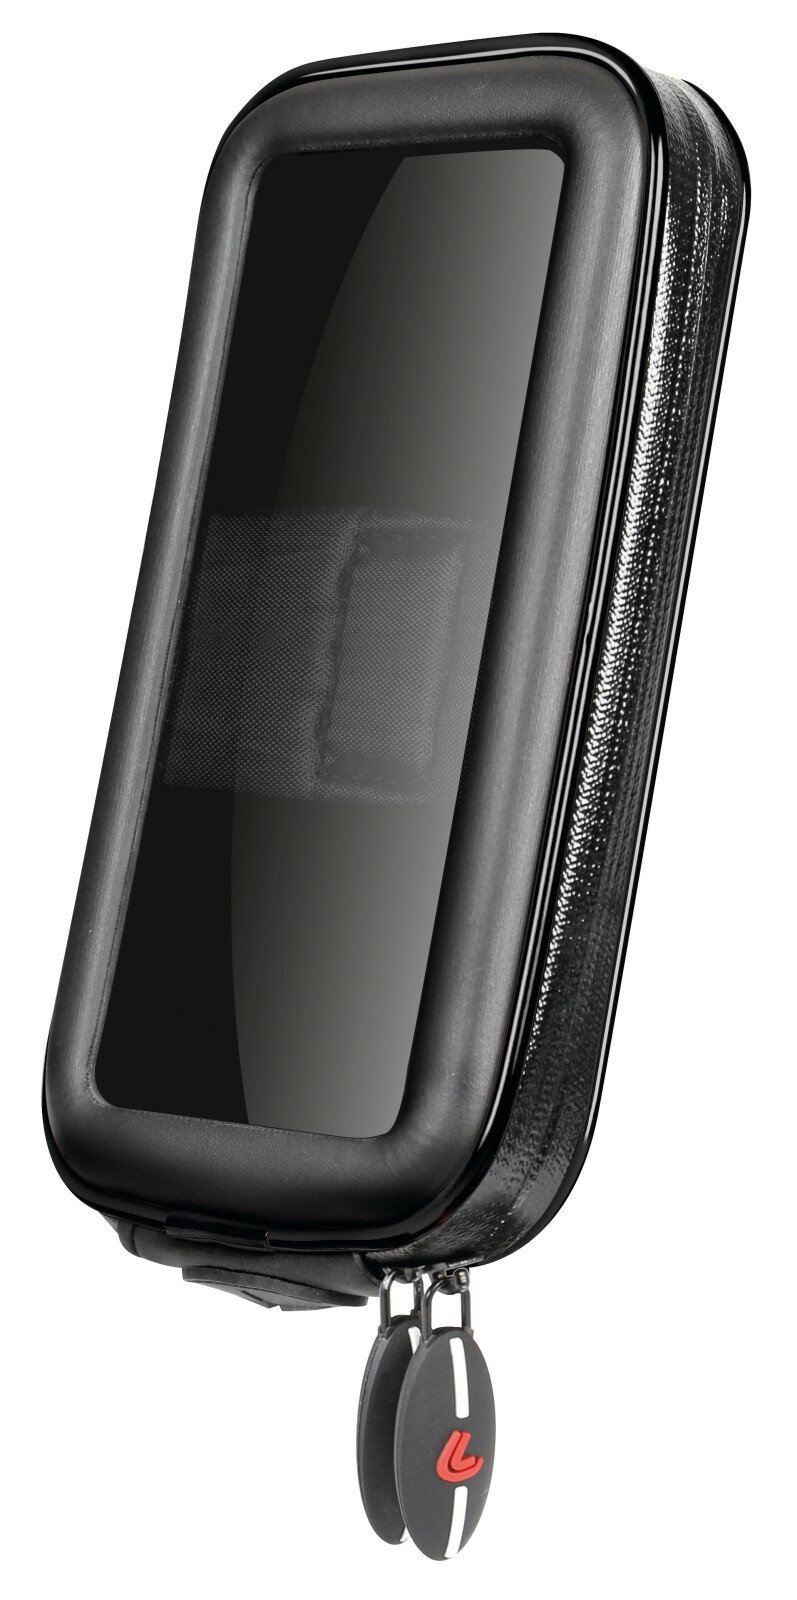 Opti Sized univerzális tok az Opti Line mobiltelefon tartókhoz - L - 80x155mm thumb